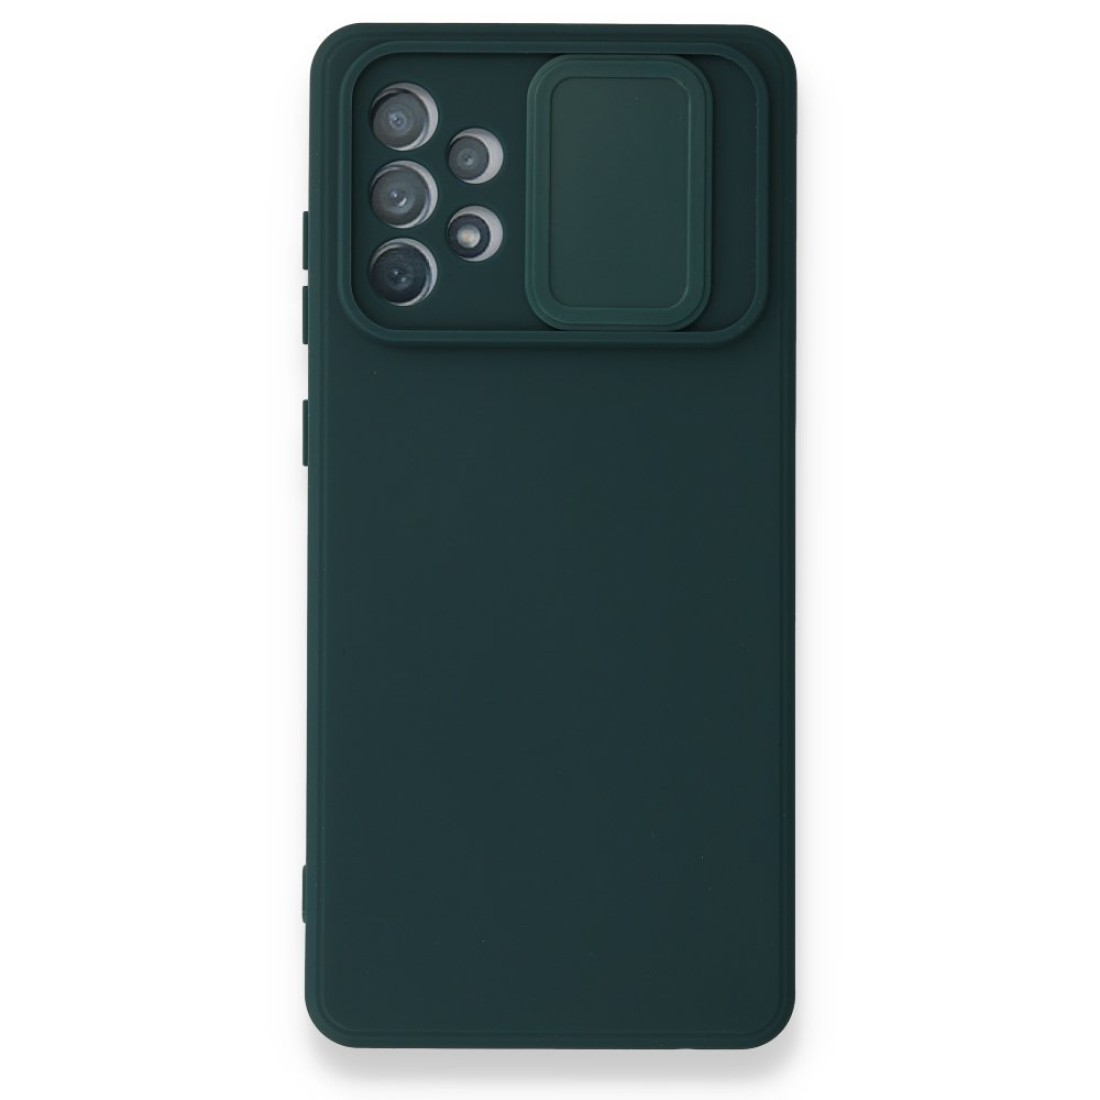 Samsung Galaxy A52S Kılıf Color Lens Silikon - Yeşil